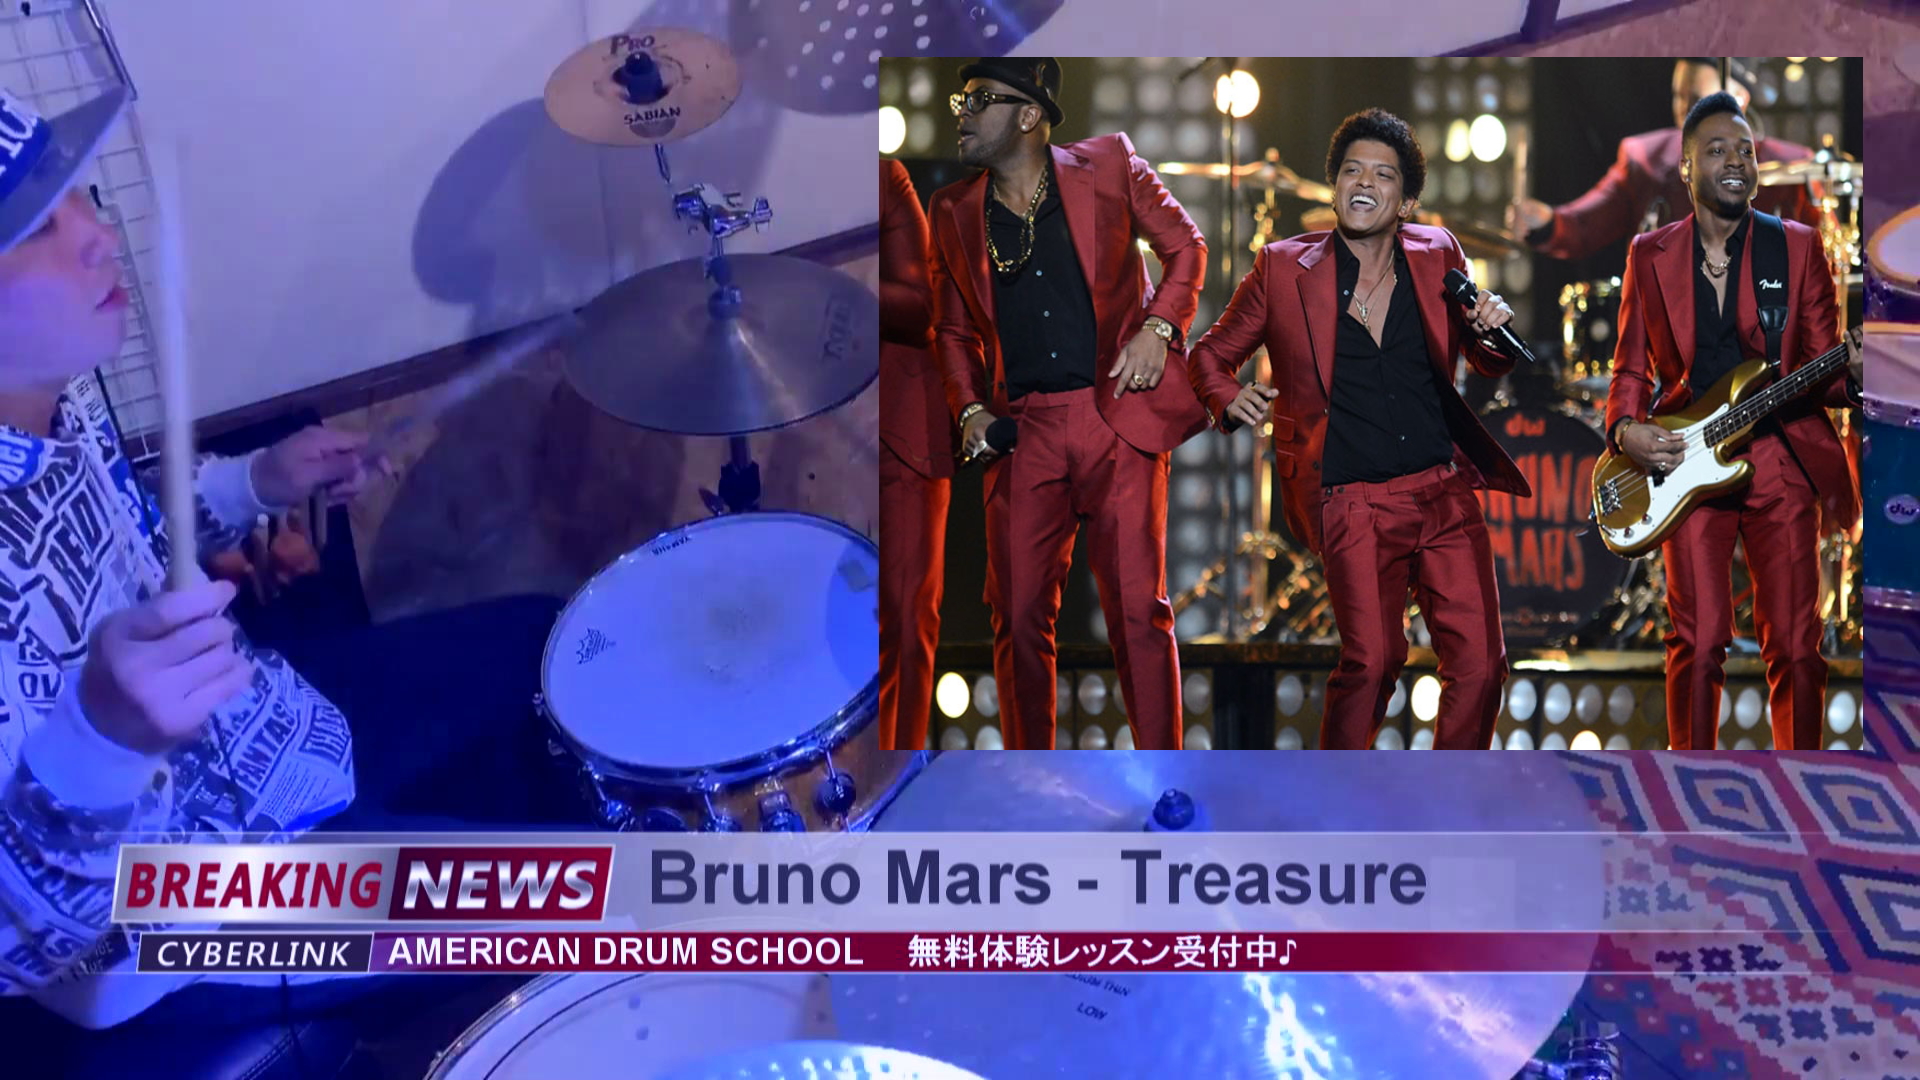 ドラム叩いてみた動画 Bruno Mars Treasure ブルーノマーズ トレジャー 70年代のディスコリズム アメリカンドラムスクール